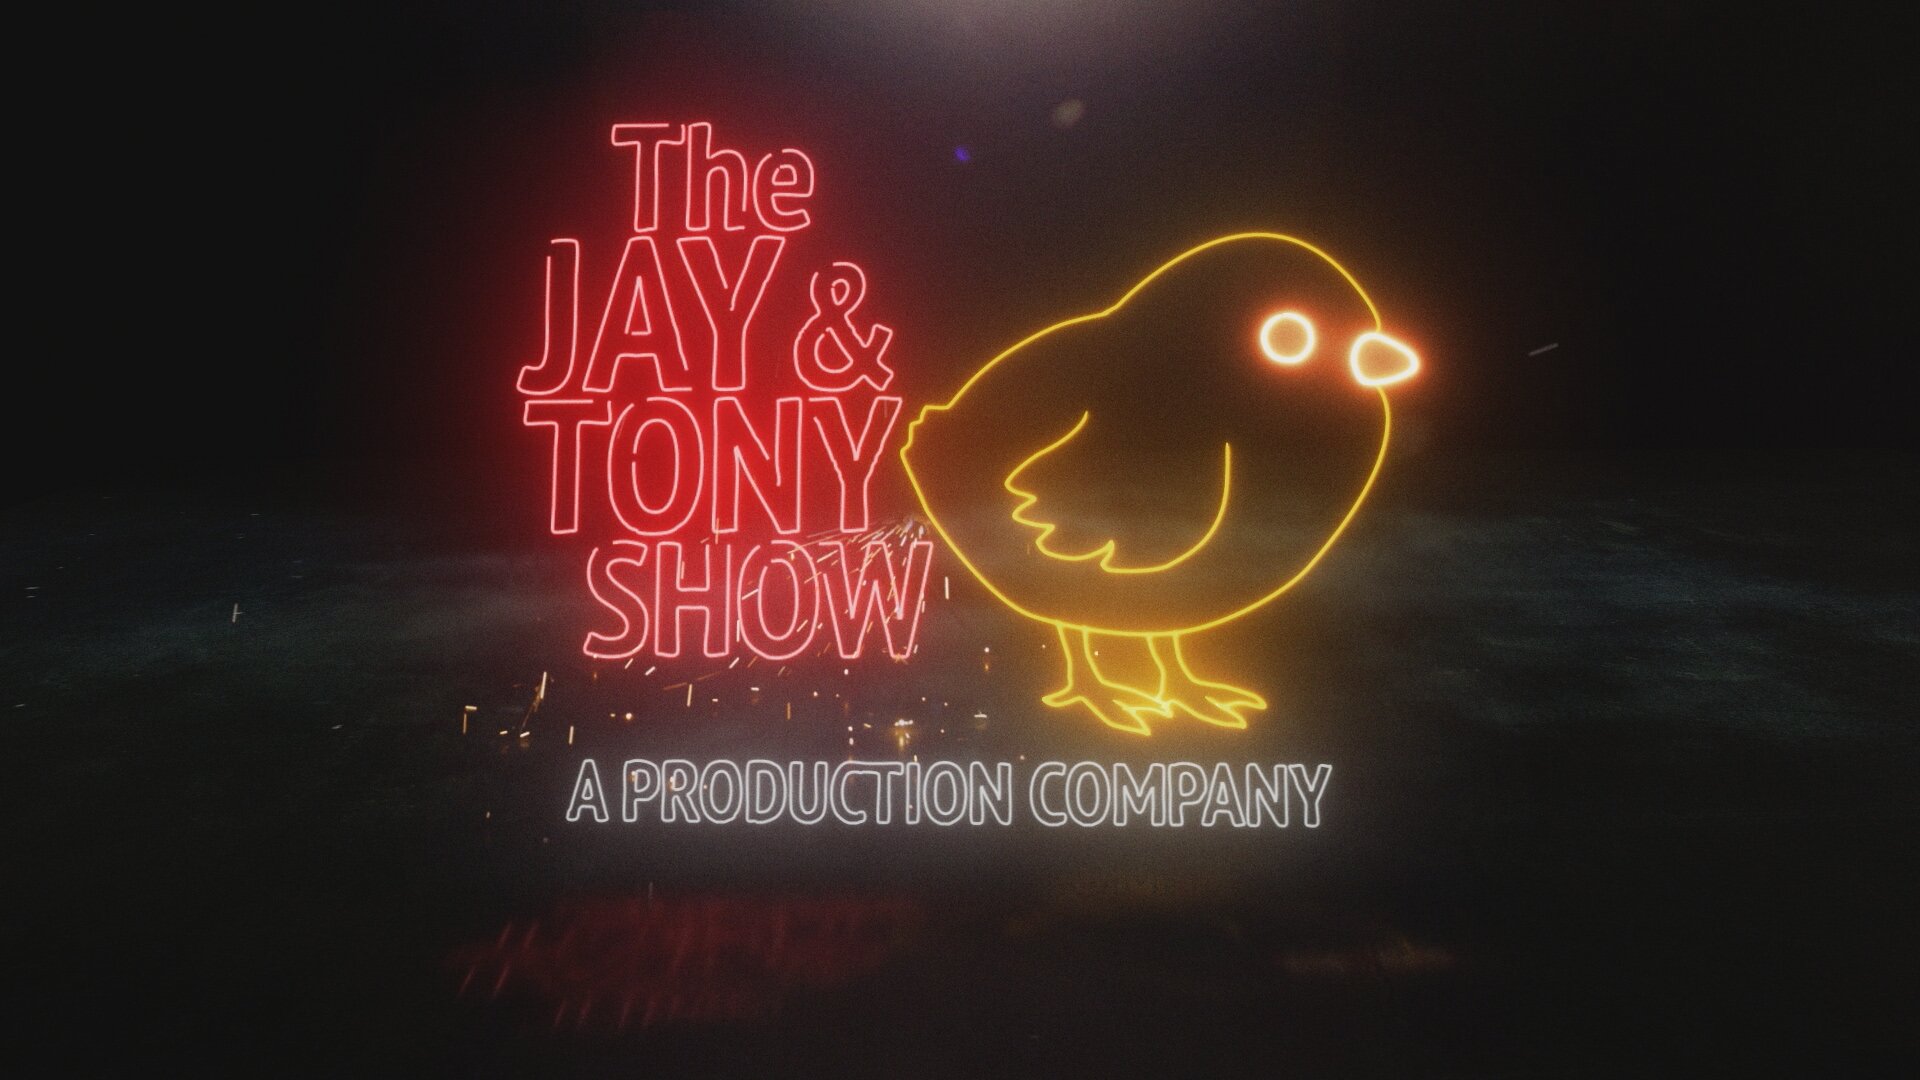 THE JAY & TONY SHOW